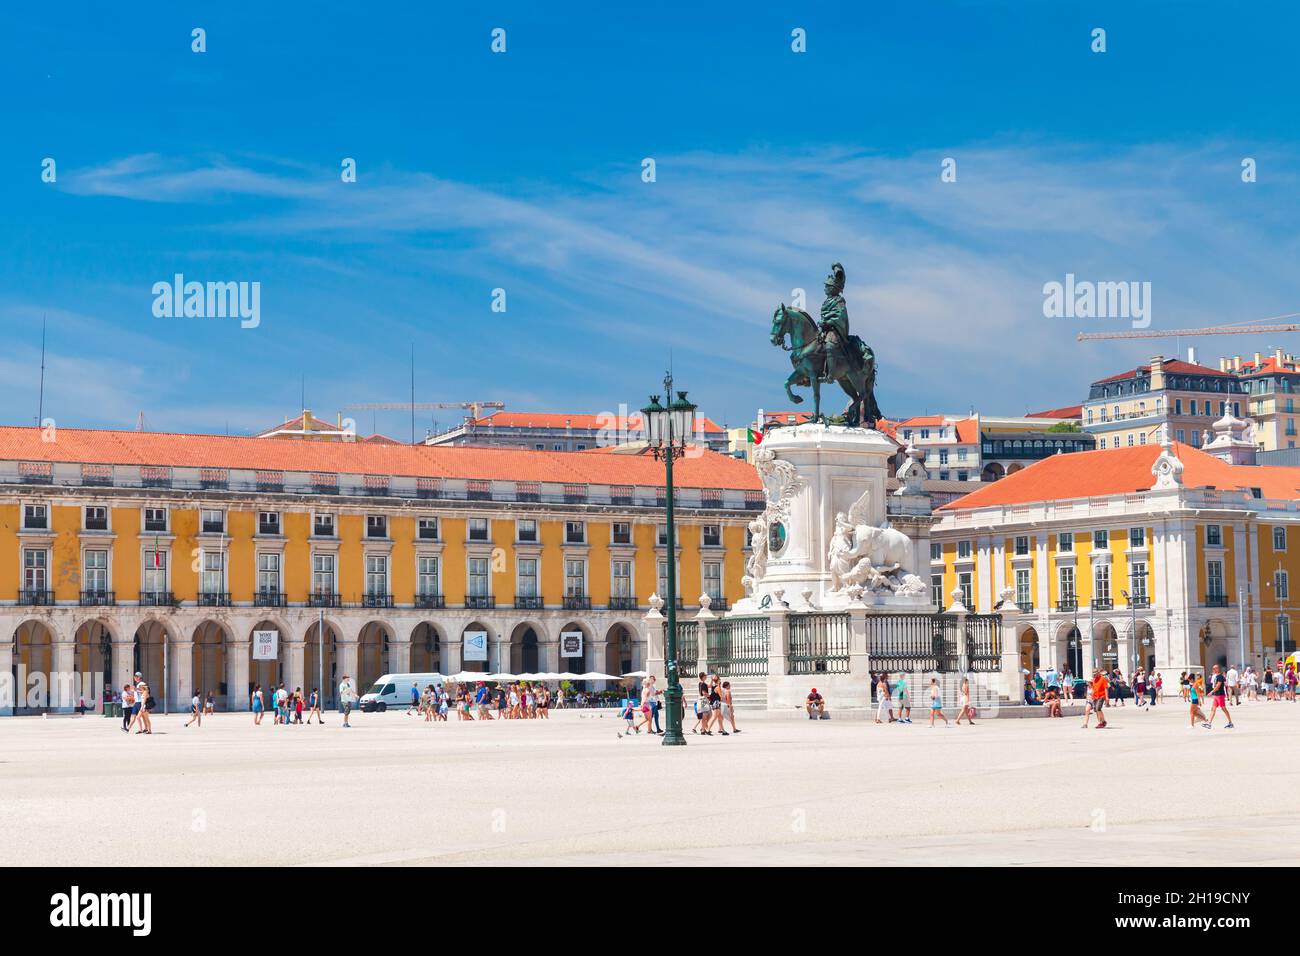 Lisbonne, Portugal - 12 août 2017 : vue sur la place du commerce par une journée ensoleillée avec les touristes à pied près de la statue du roi José I, par Machado de Castro construit Banque D'Images